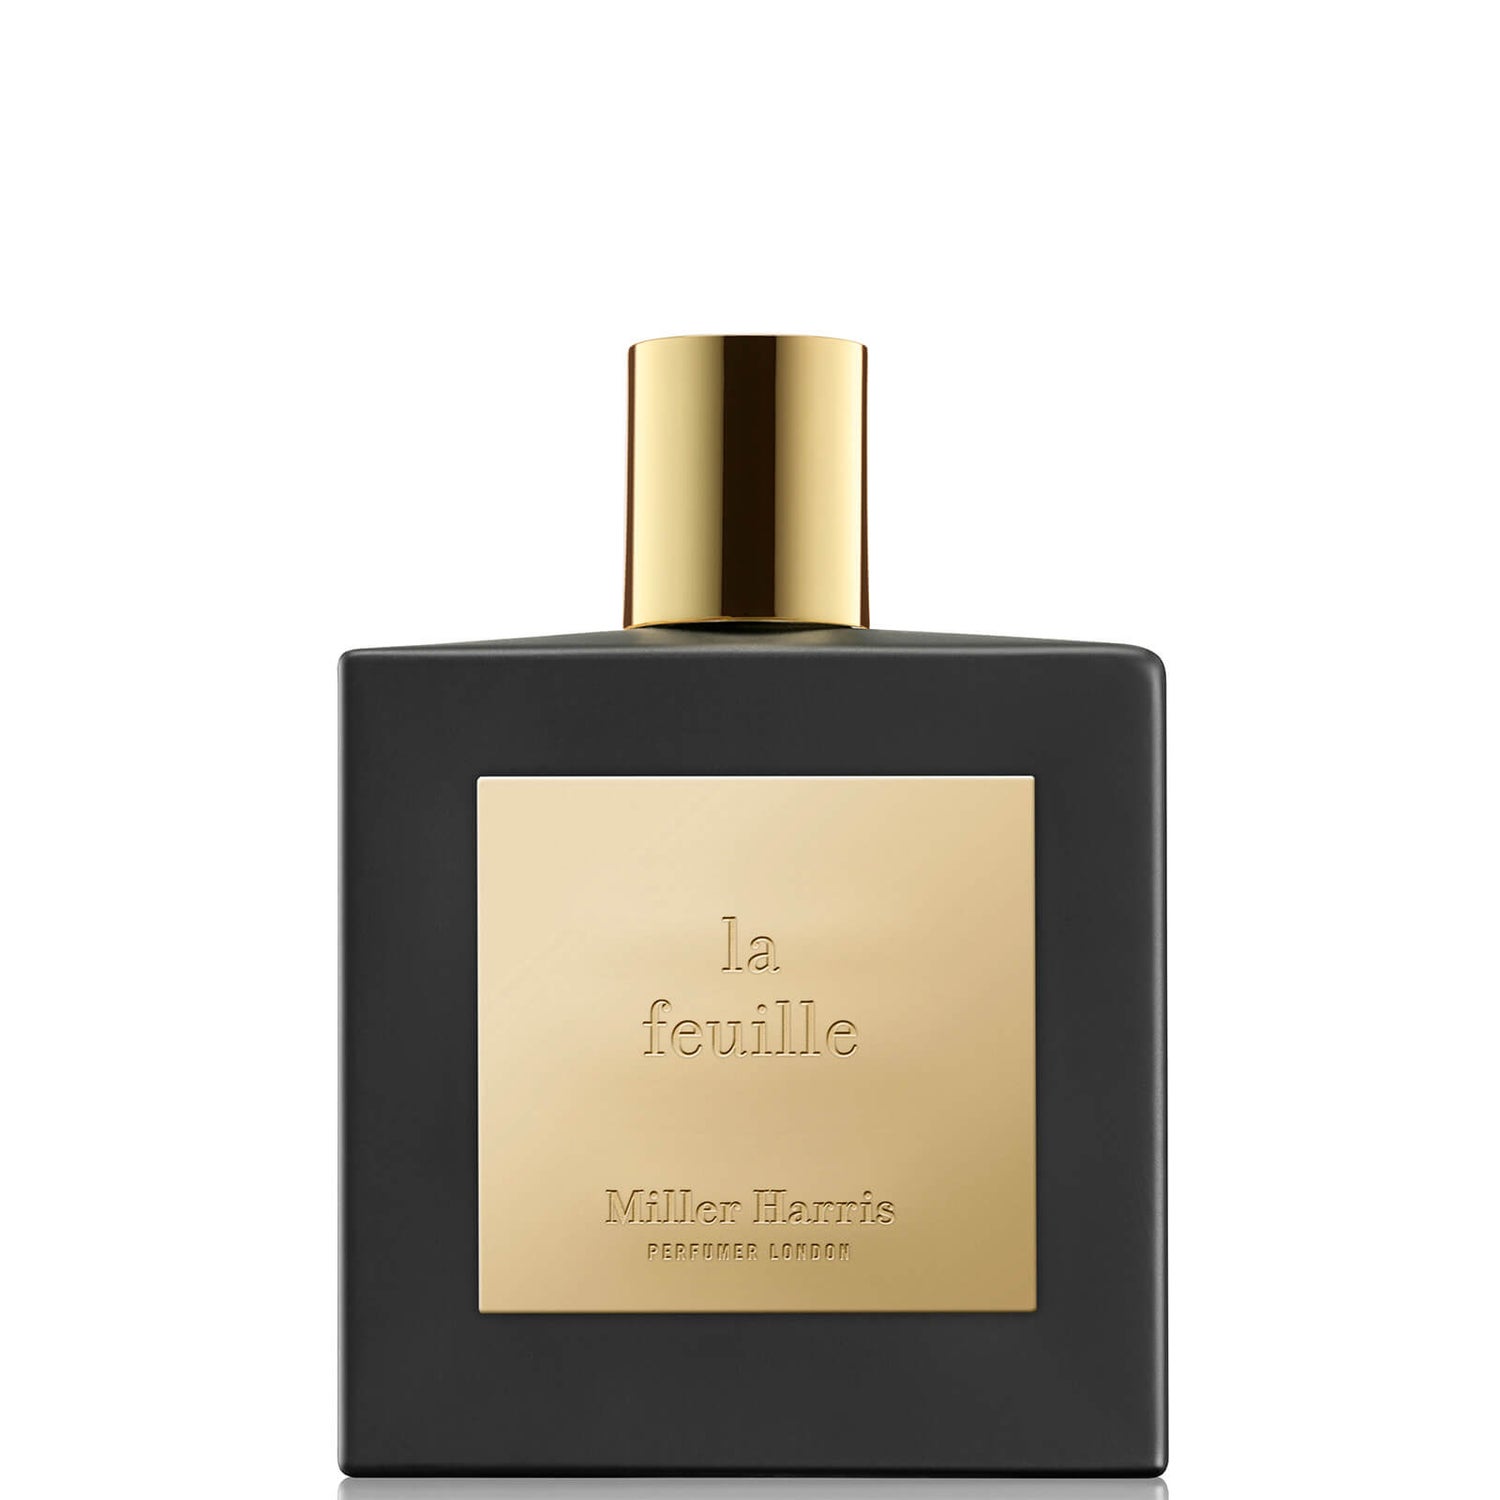 Miller Harris La Feuille Eau de Parfum 100ml